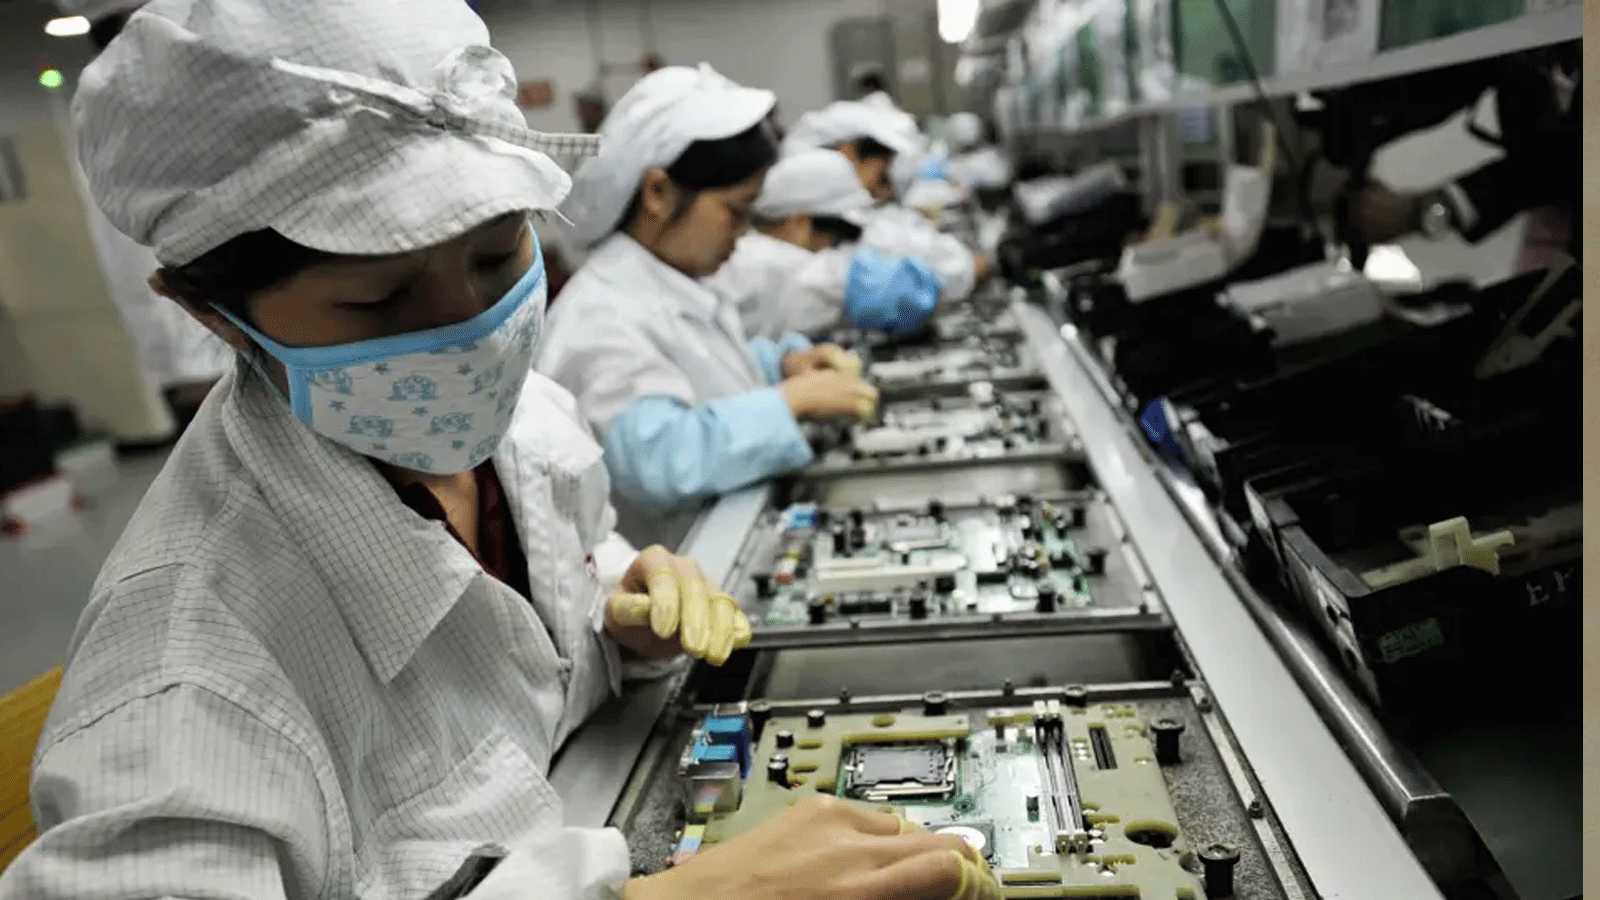 تجميع مكونات Apple في الصين، ولا يزال تدفق العمال والأجزاء الرئيسية متوقفًا بسبب تفشي فيروس كورونا.